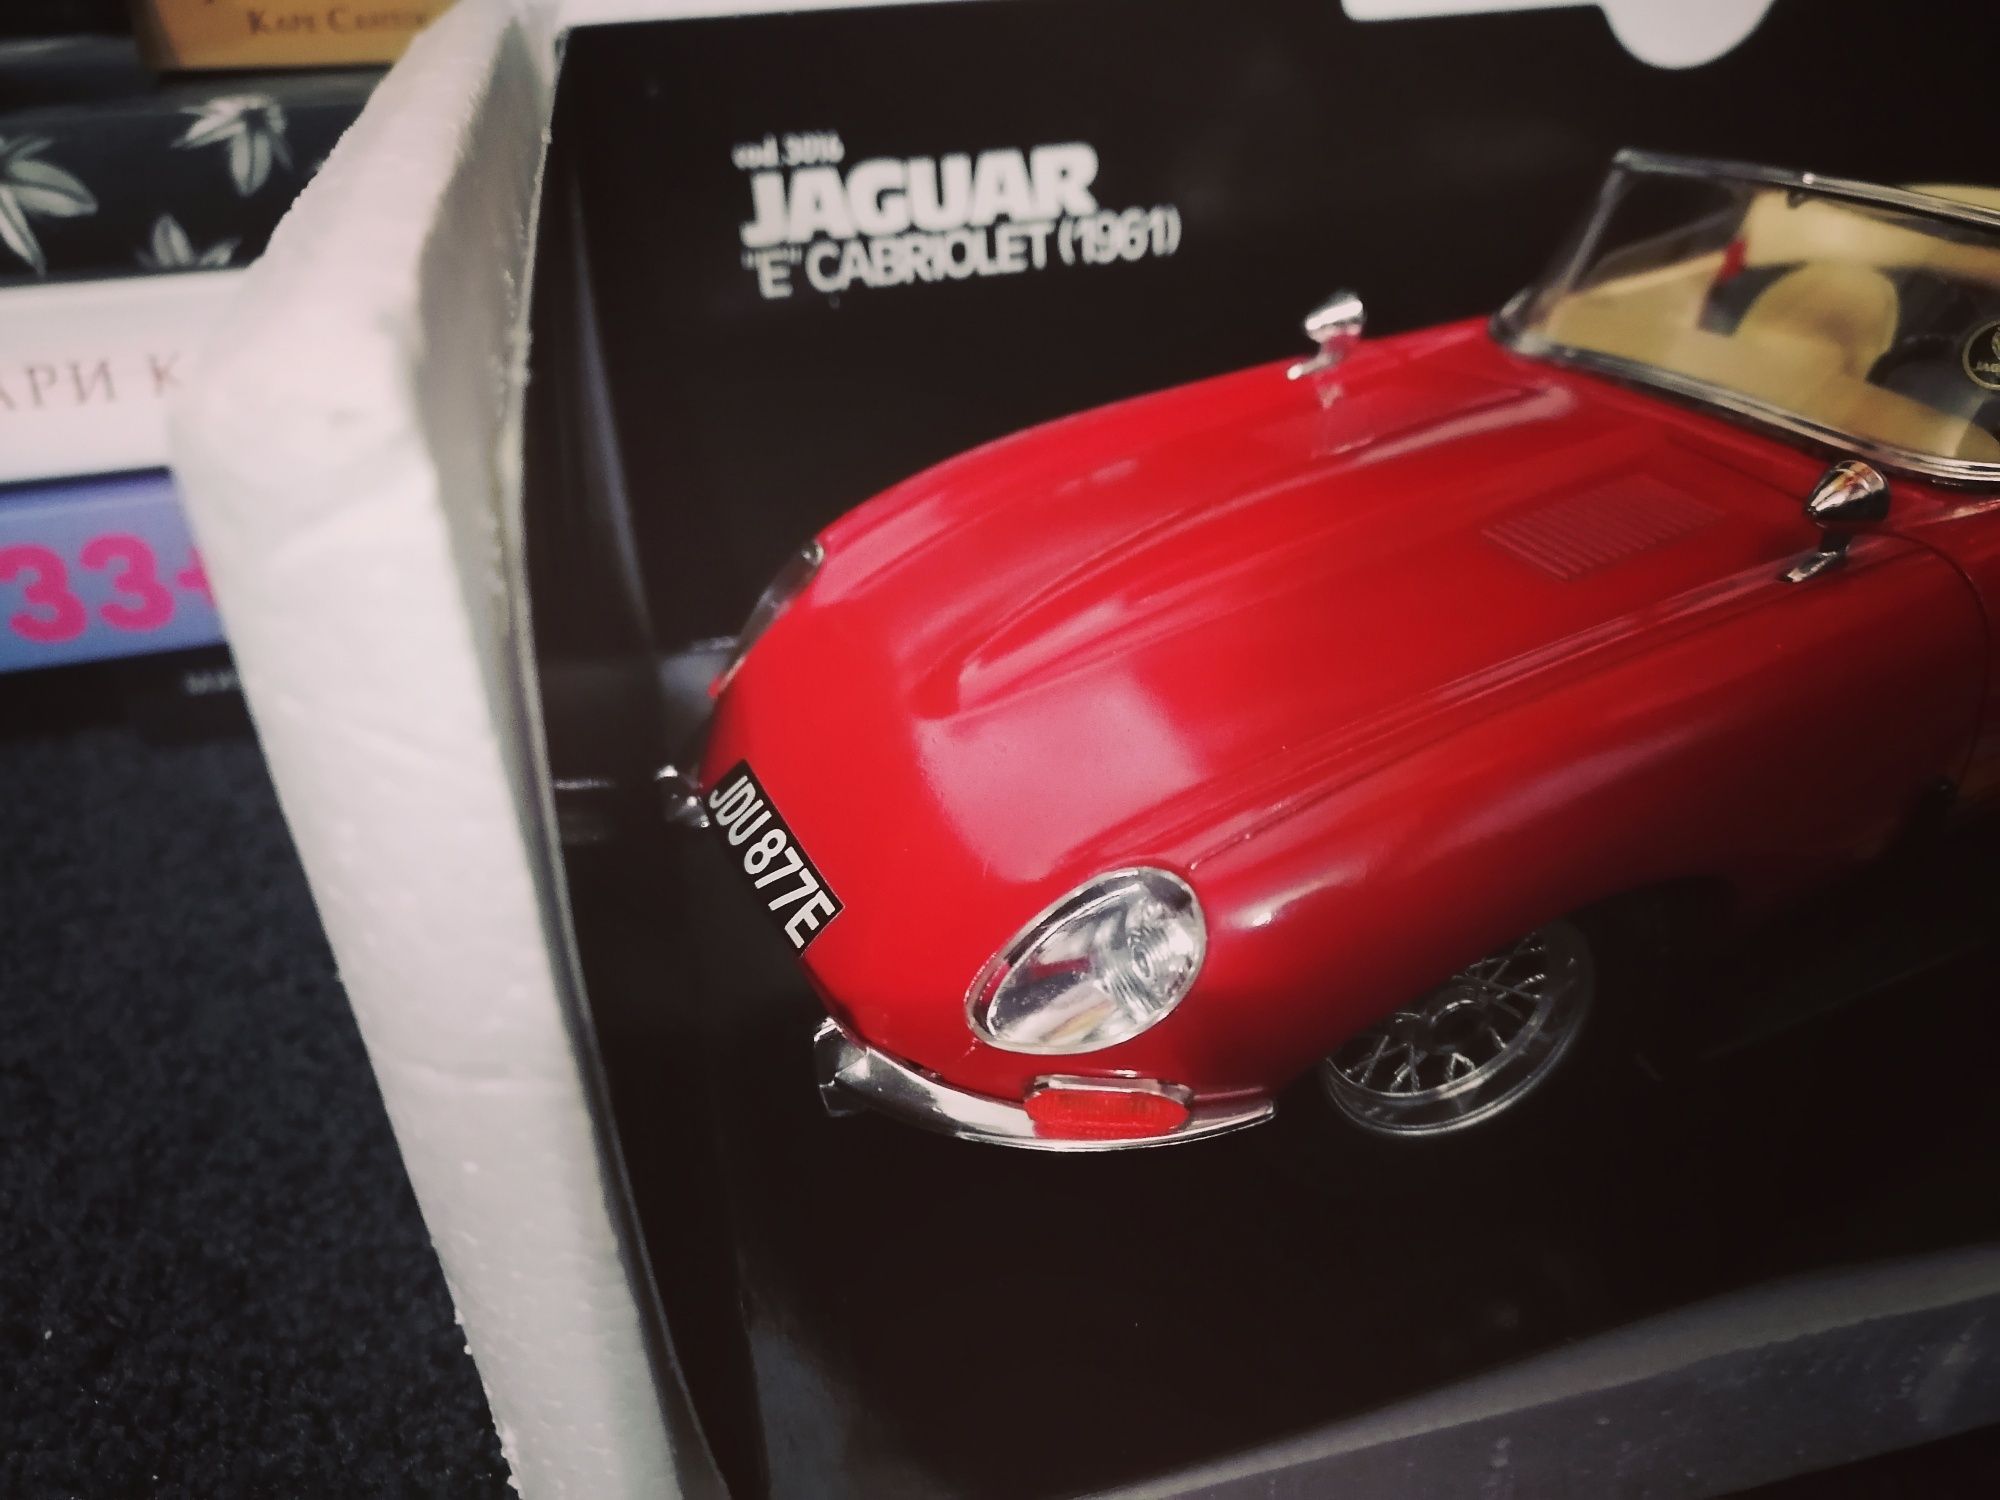 Jaguar "E" Cabriolet 1:18 burago